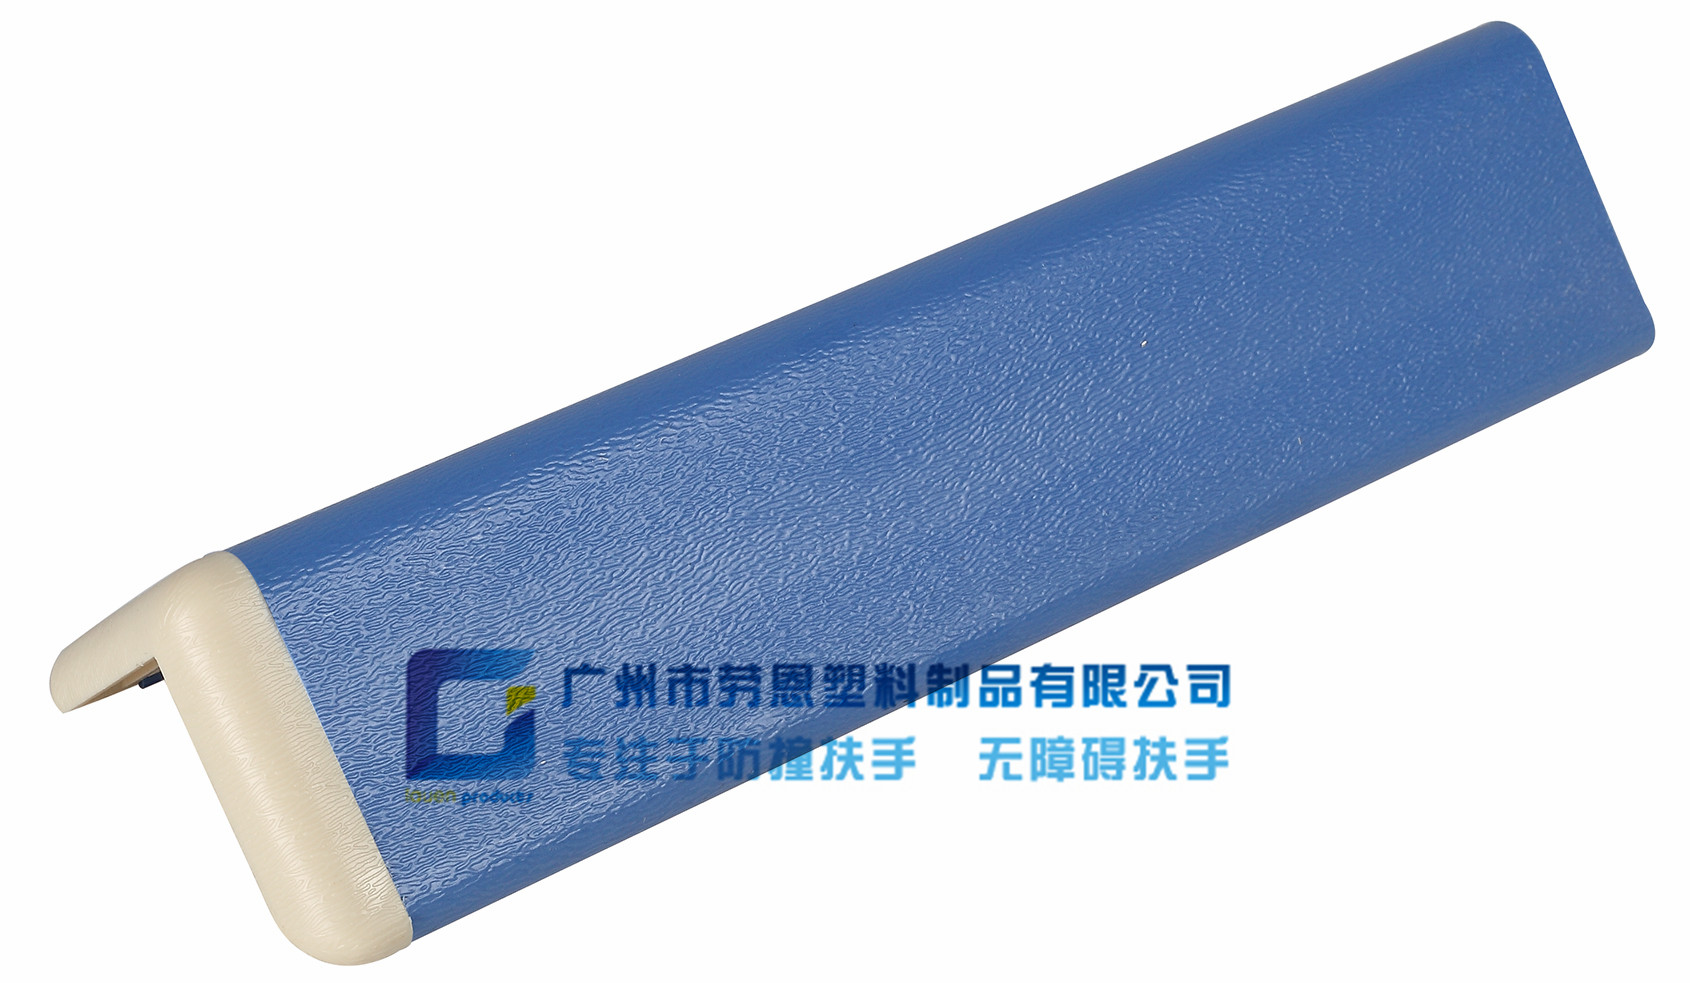 鋁合金底板護角條藍色-LE-51和LE-76可共用 (2)